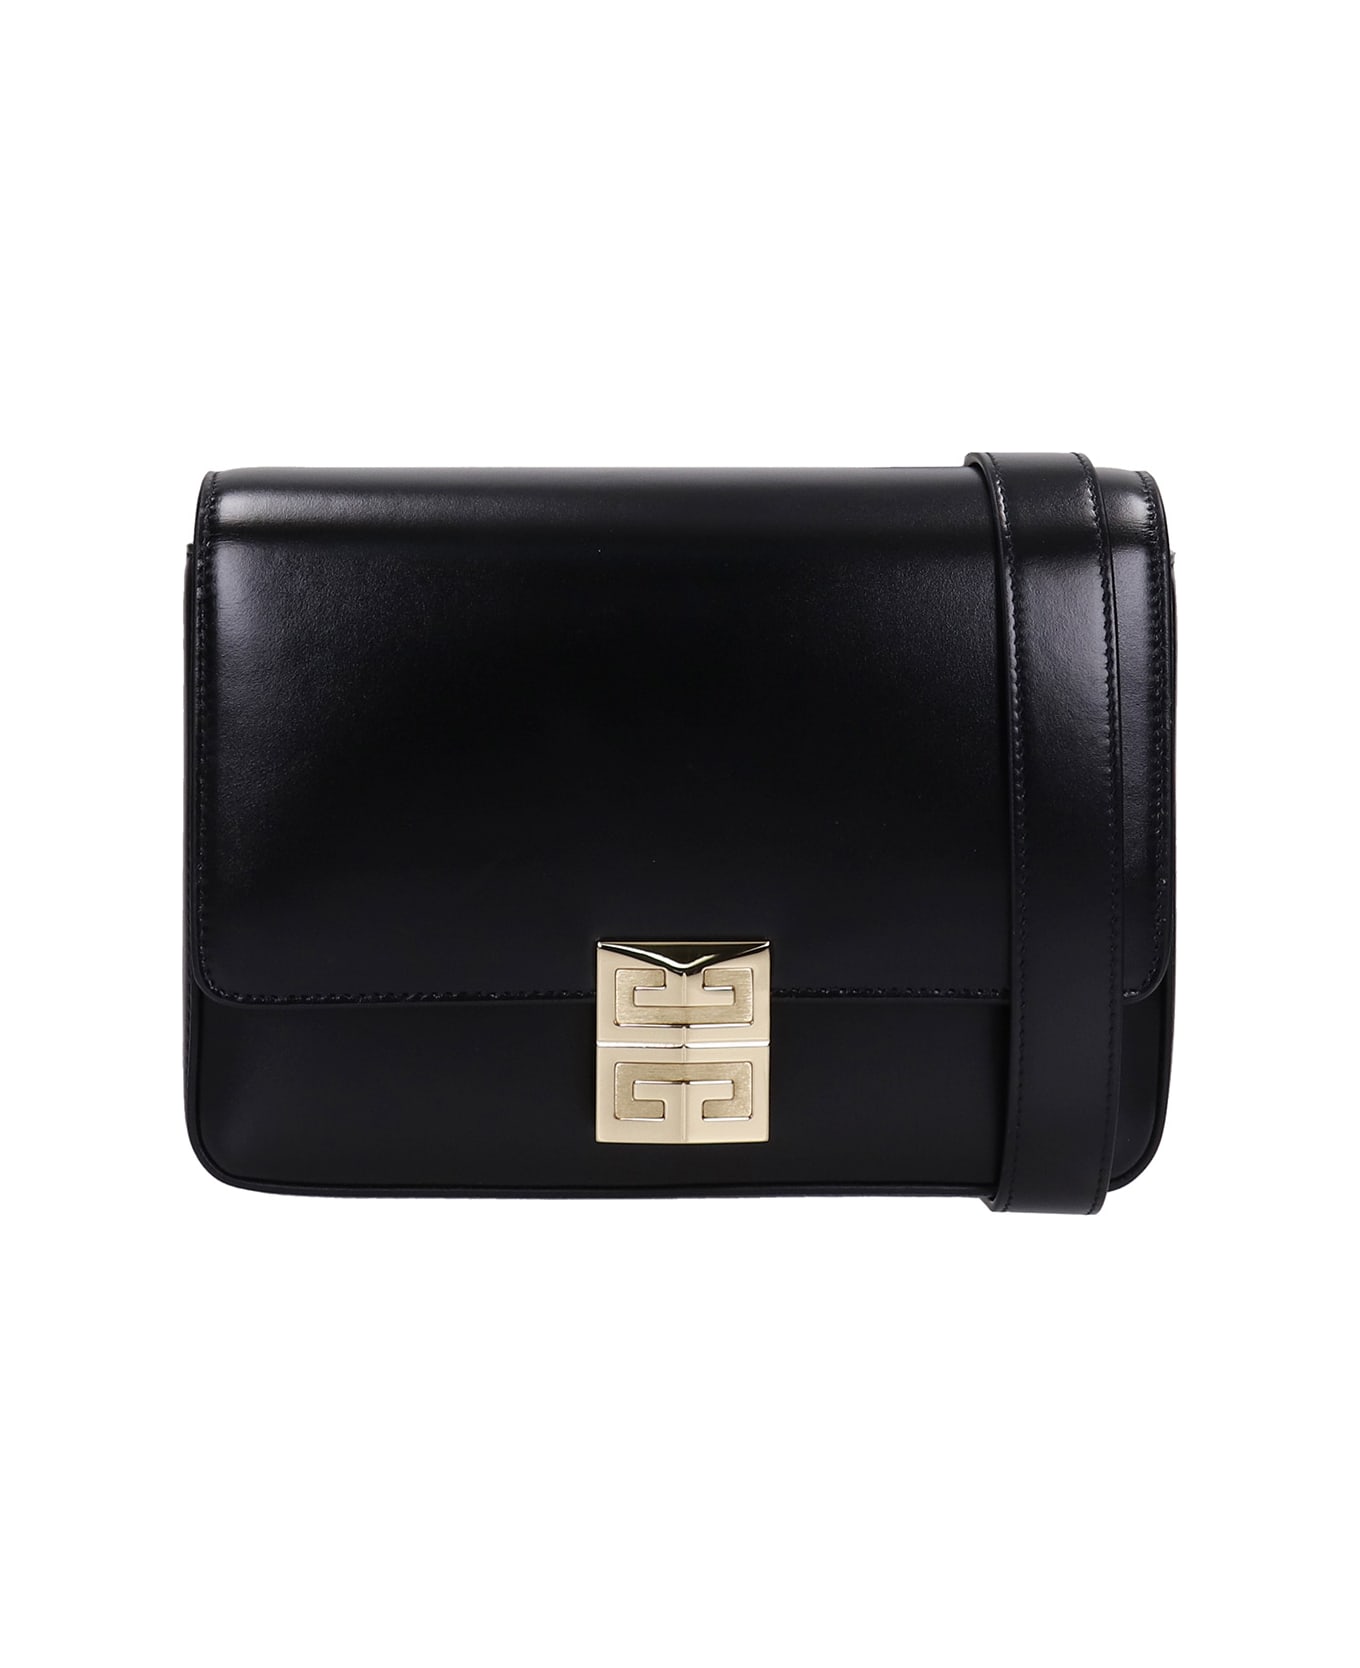 Givenchy 4 G Shoulder Bag In Black Leather - black